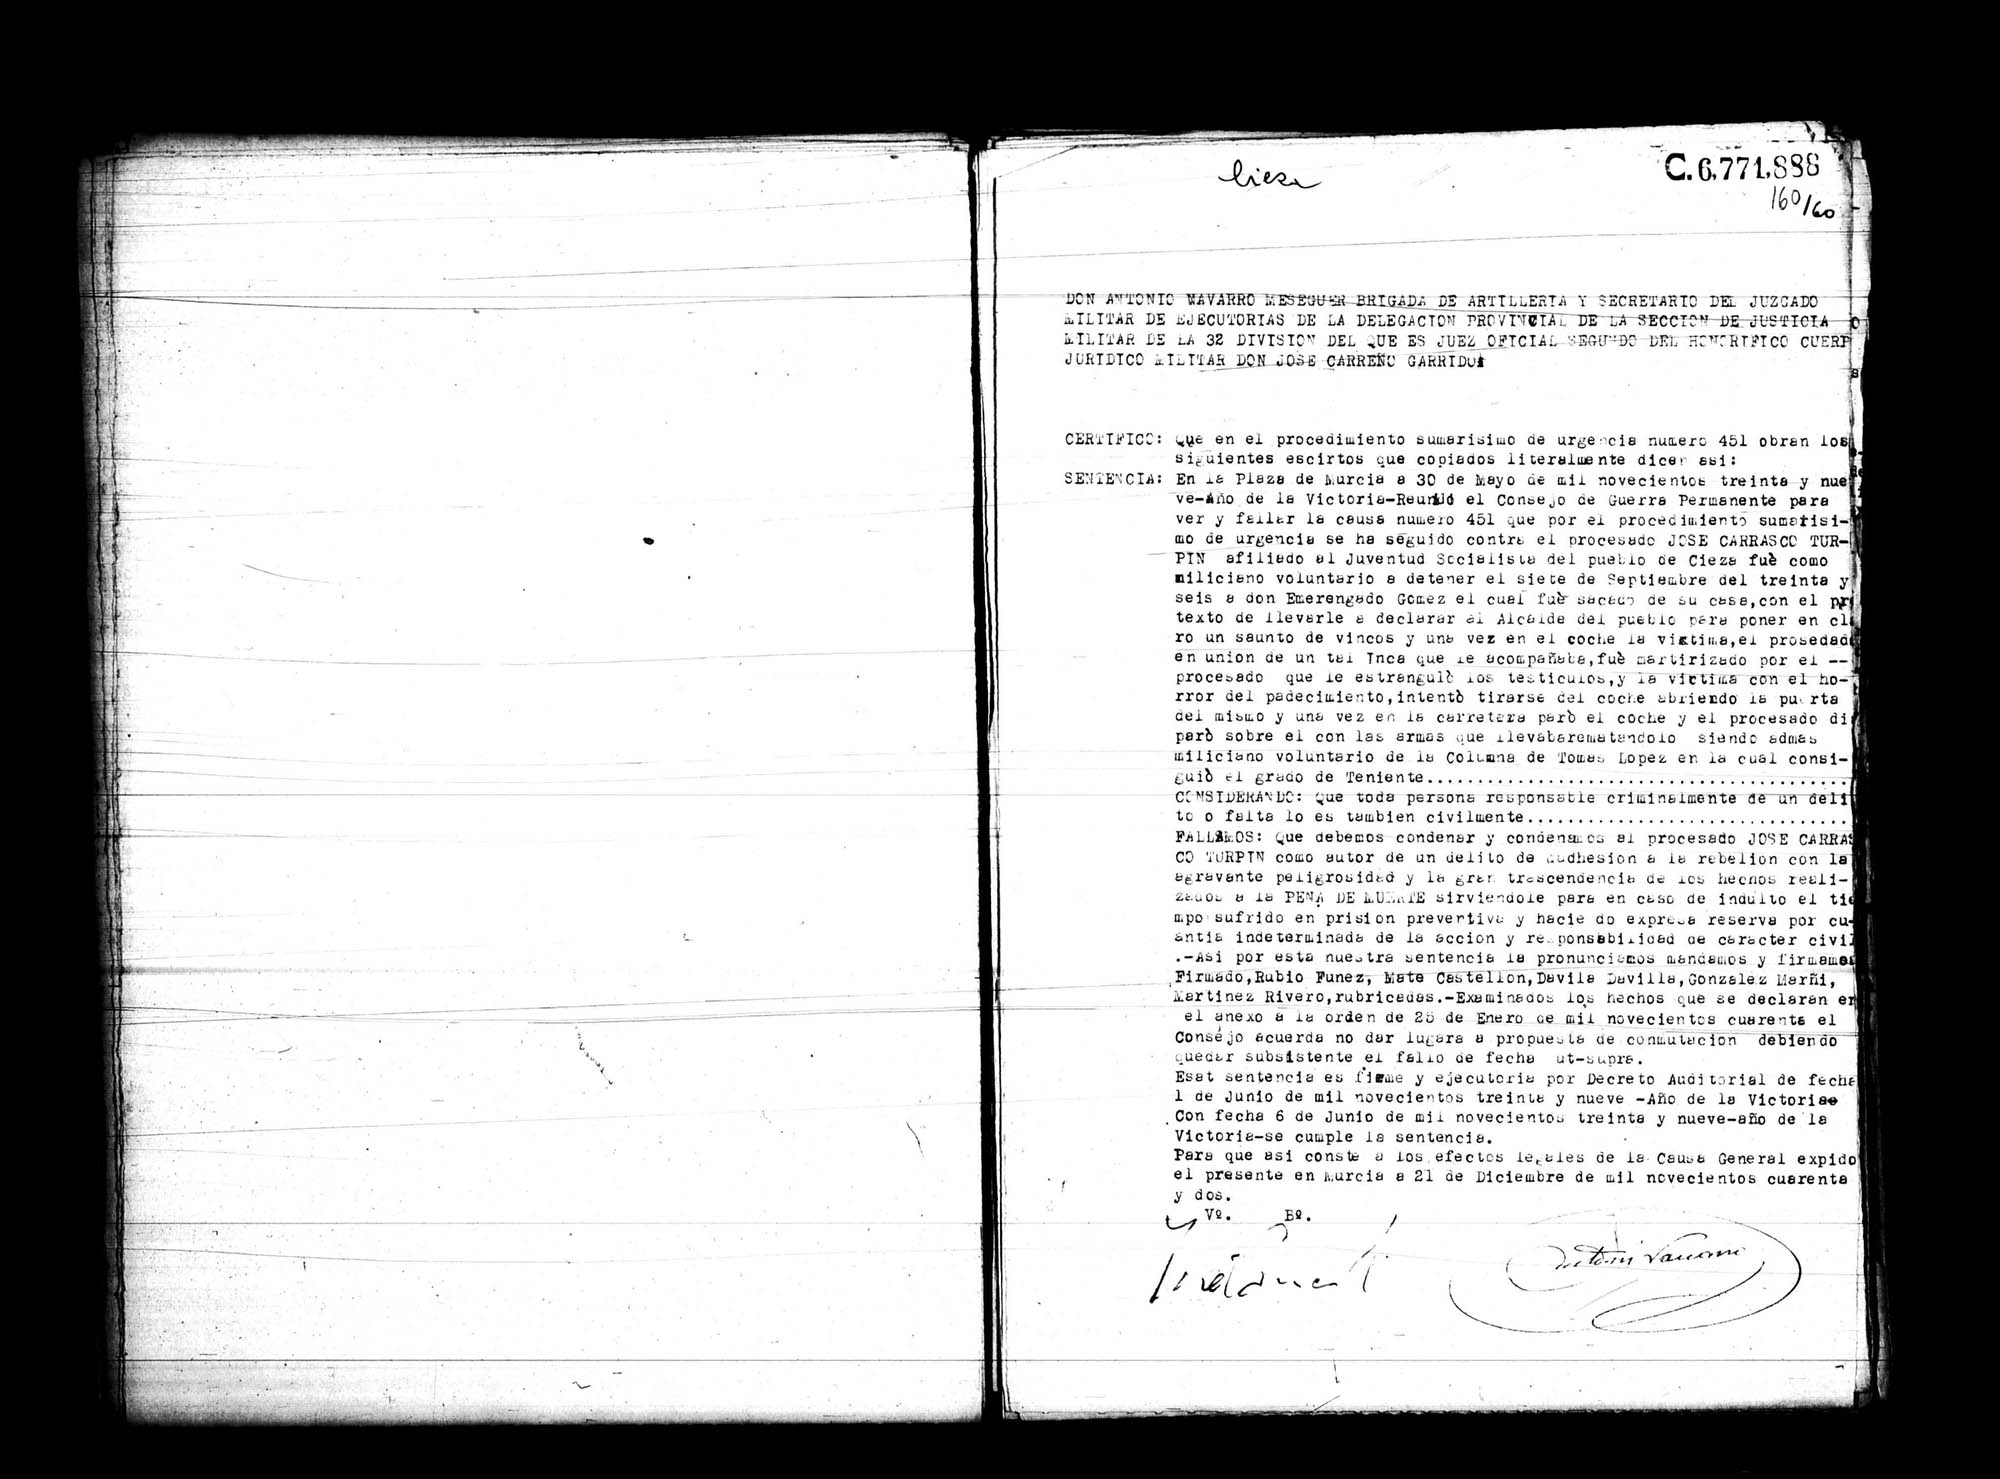 Certificado de la sentencia pronunciada contra José Carrasco Turpin, causa 451, el 30 de mayo de 1939 en Murcia.